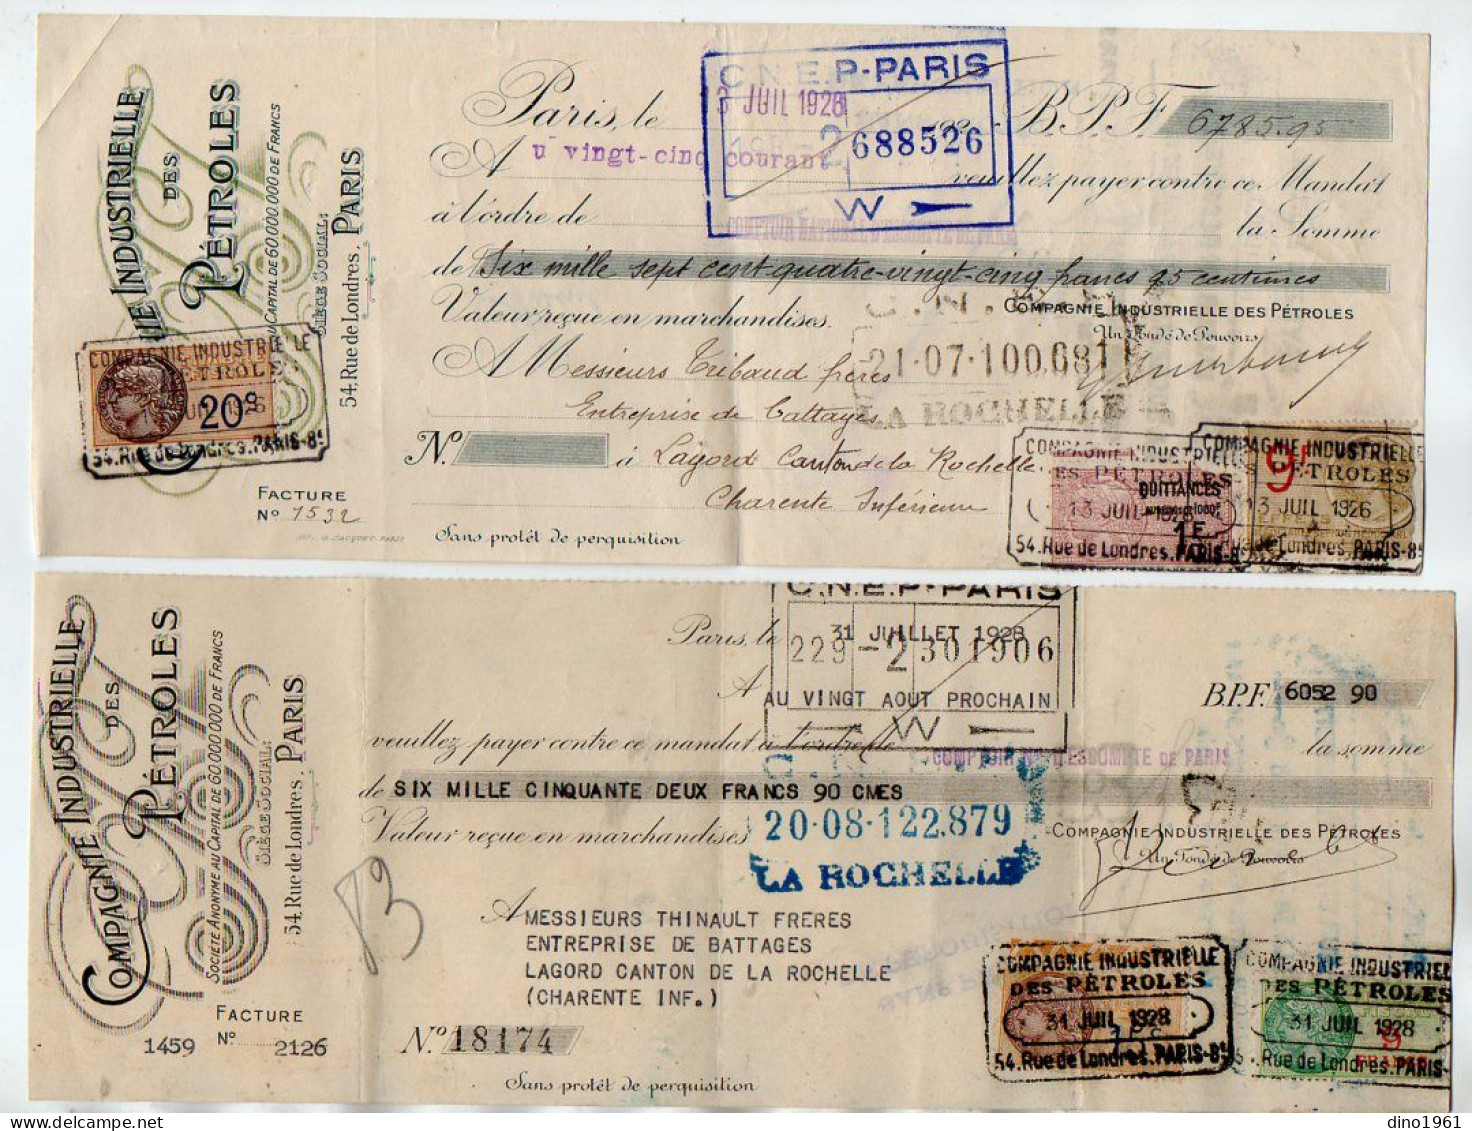 VP22.241 - 1926 / 28 - Lettre De Change - Compagnie Industrielle Des Pétroles à PARIS - Lettres De Change